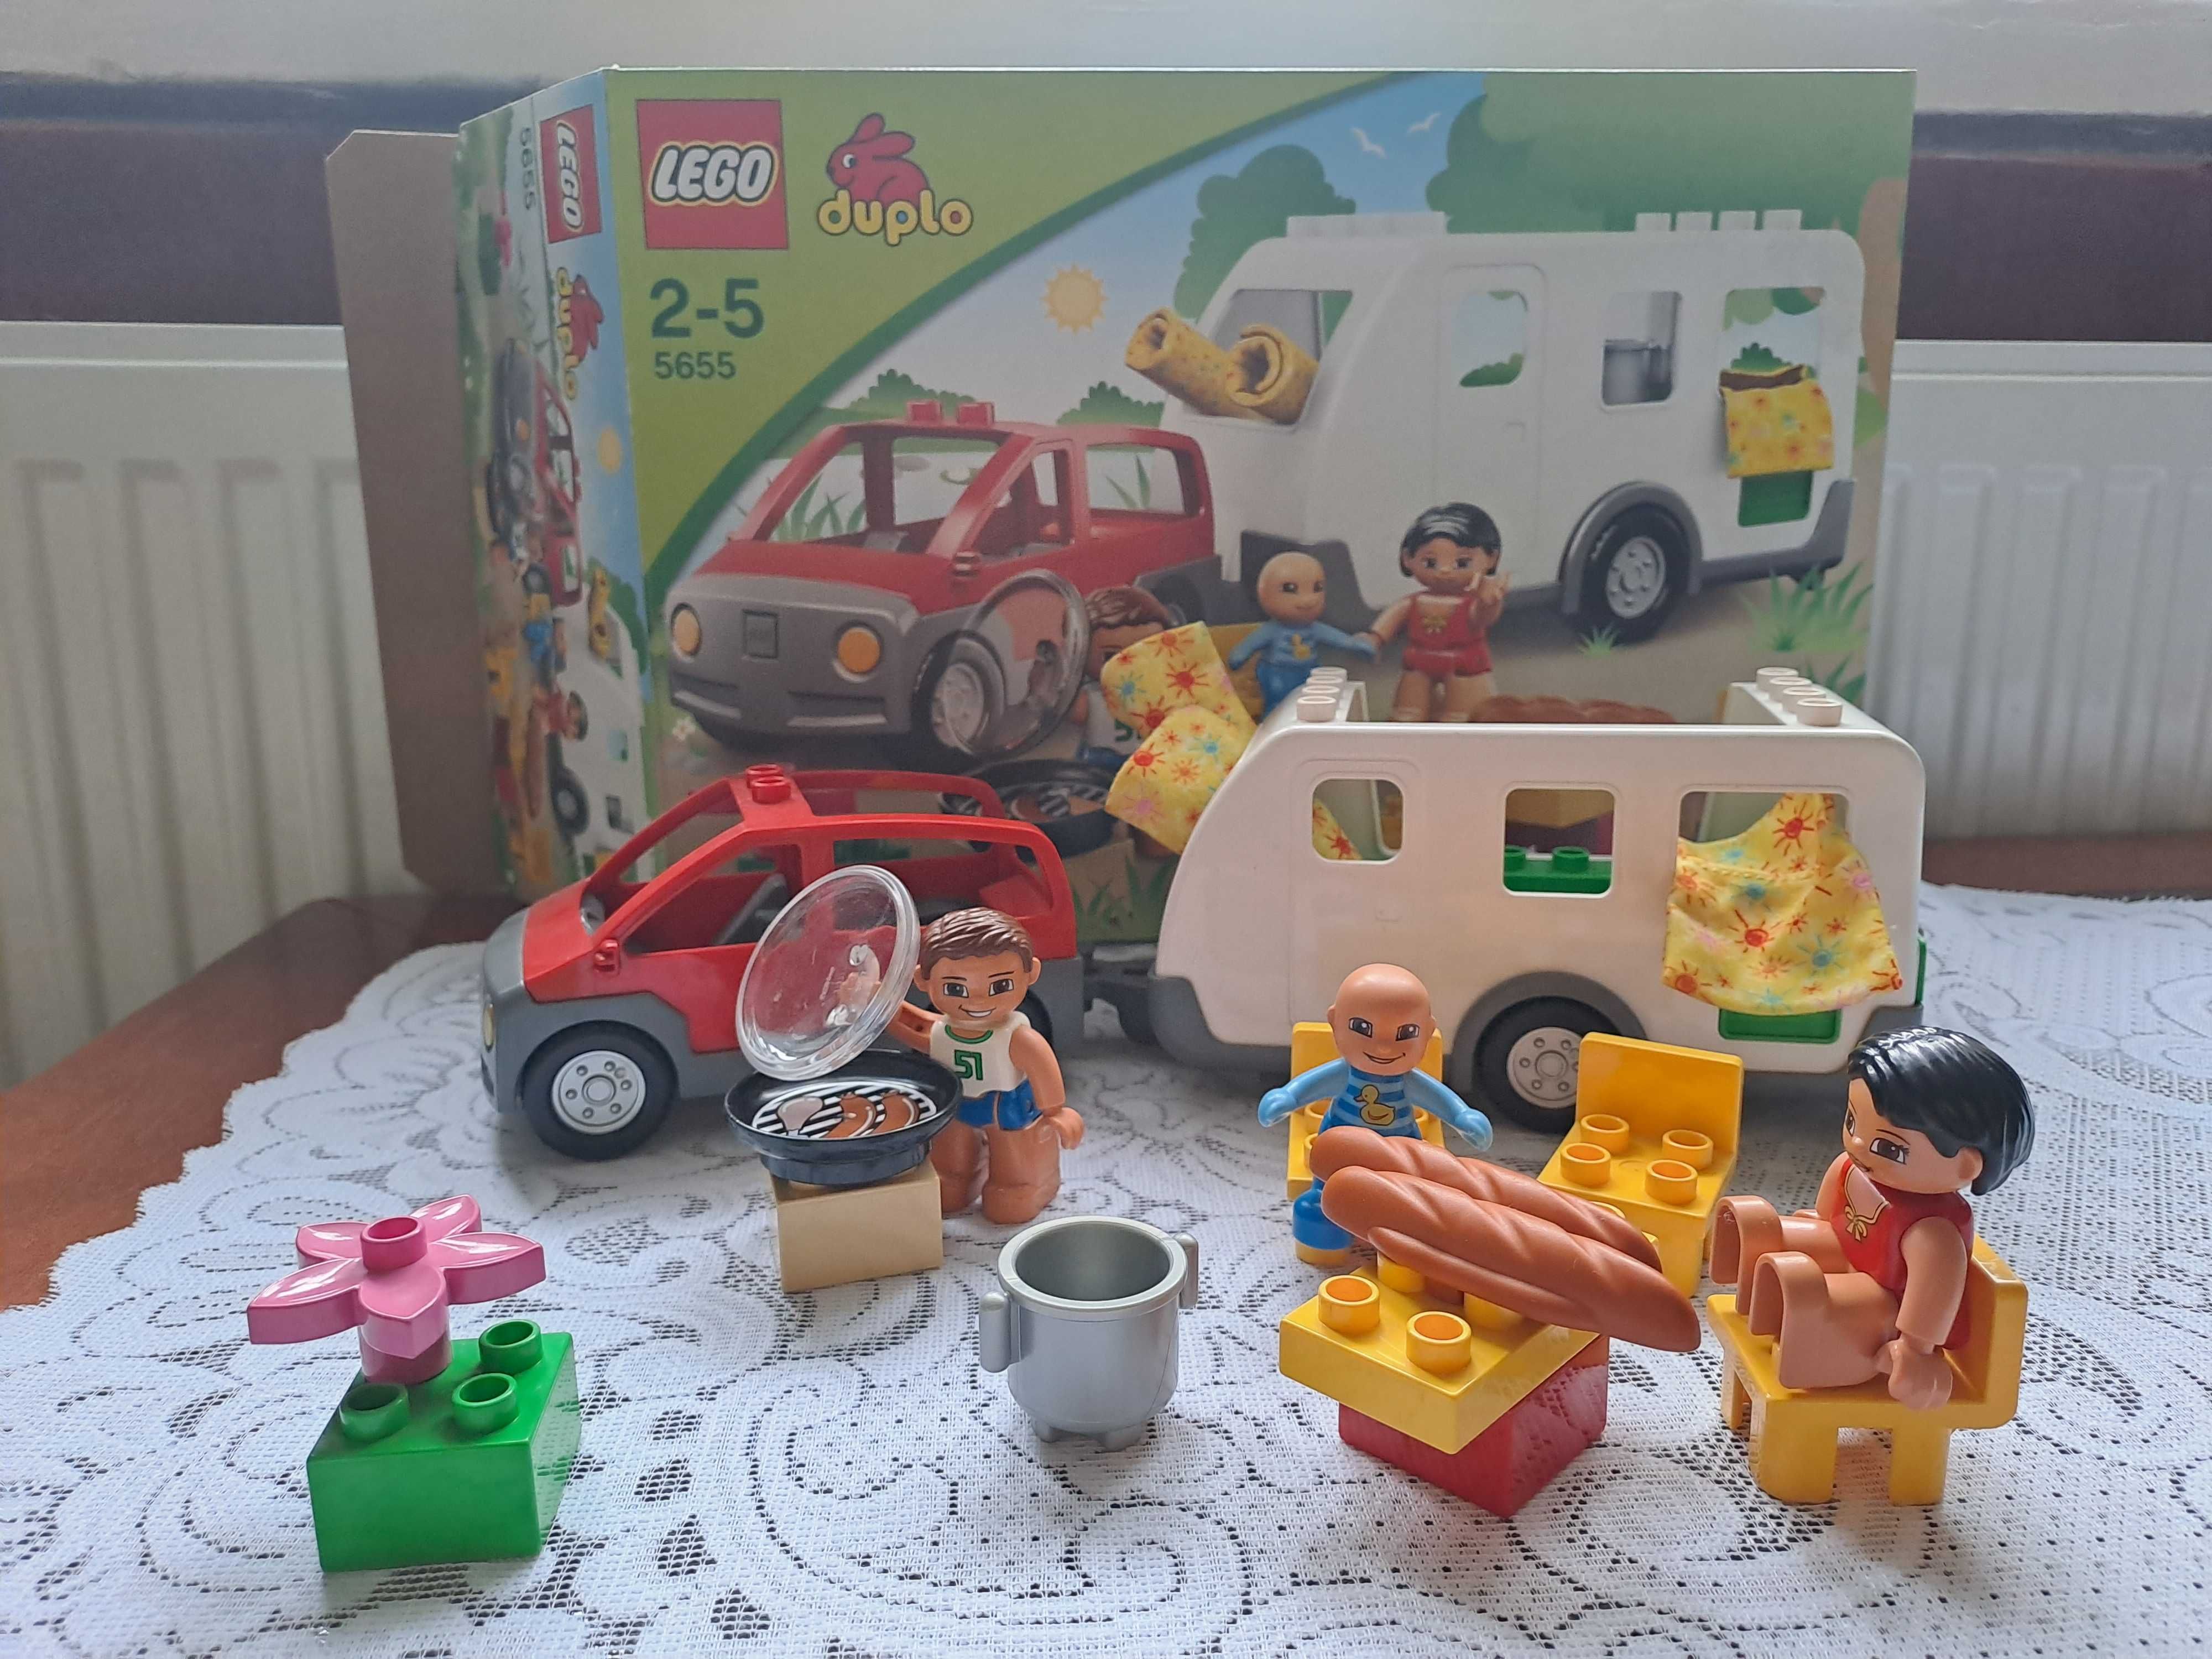 LEGO Duplo 5655 samochód+przyczepa campingowa